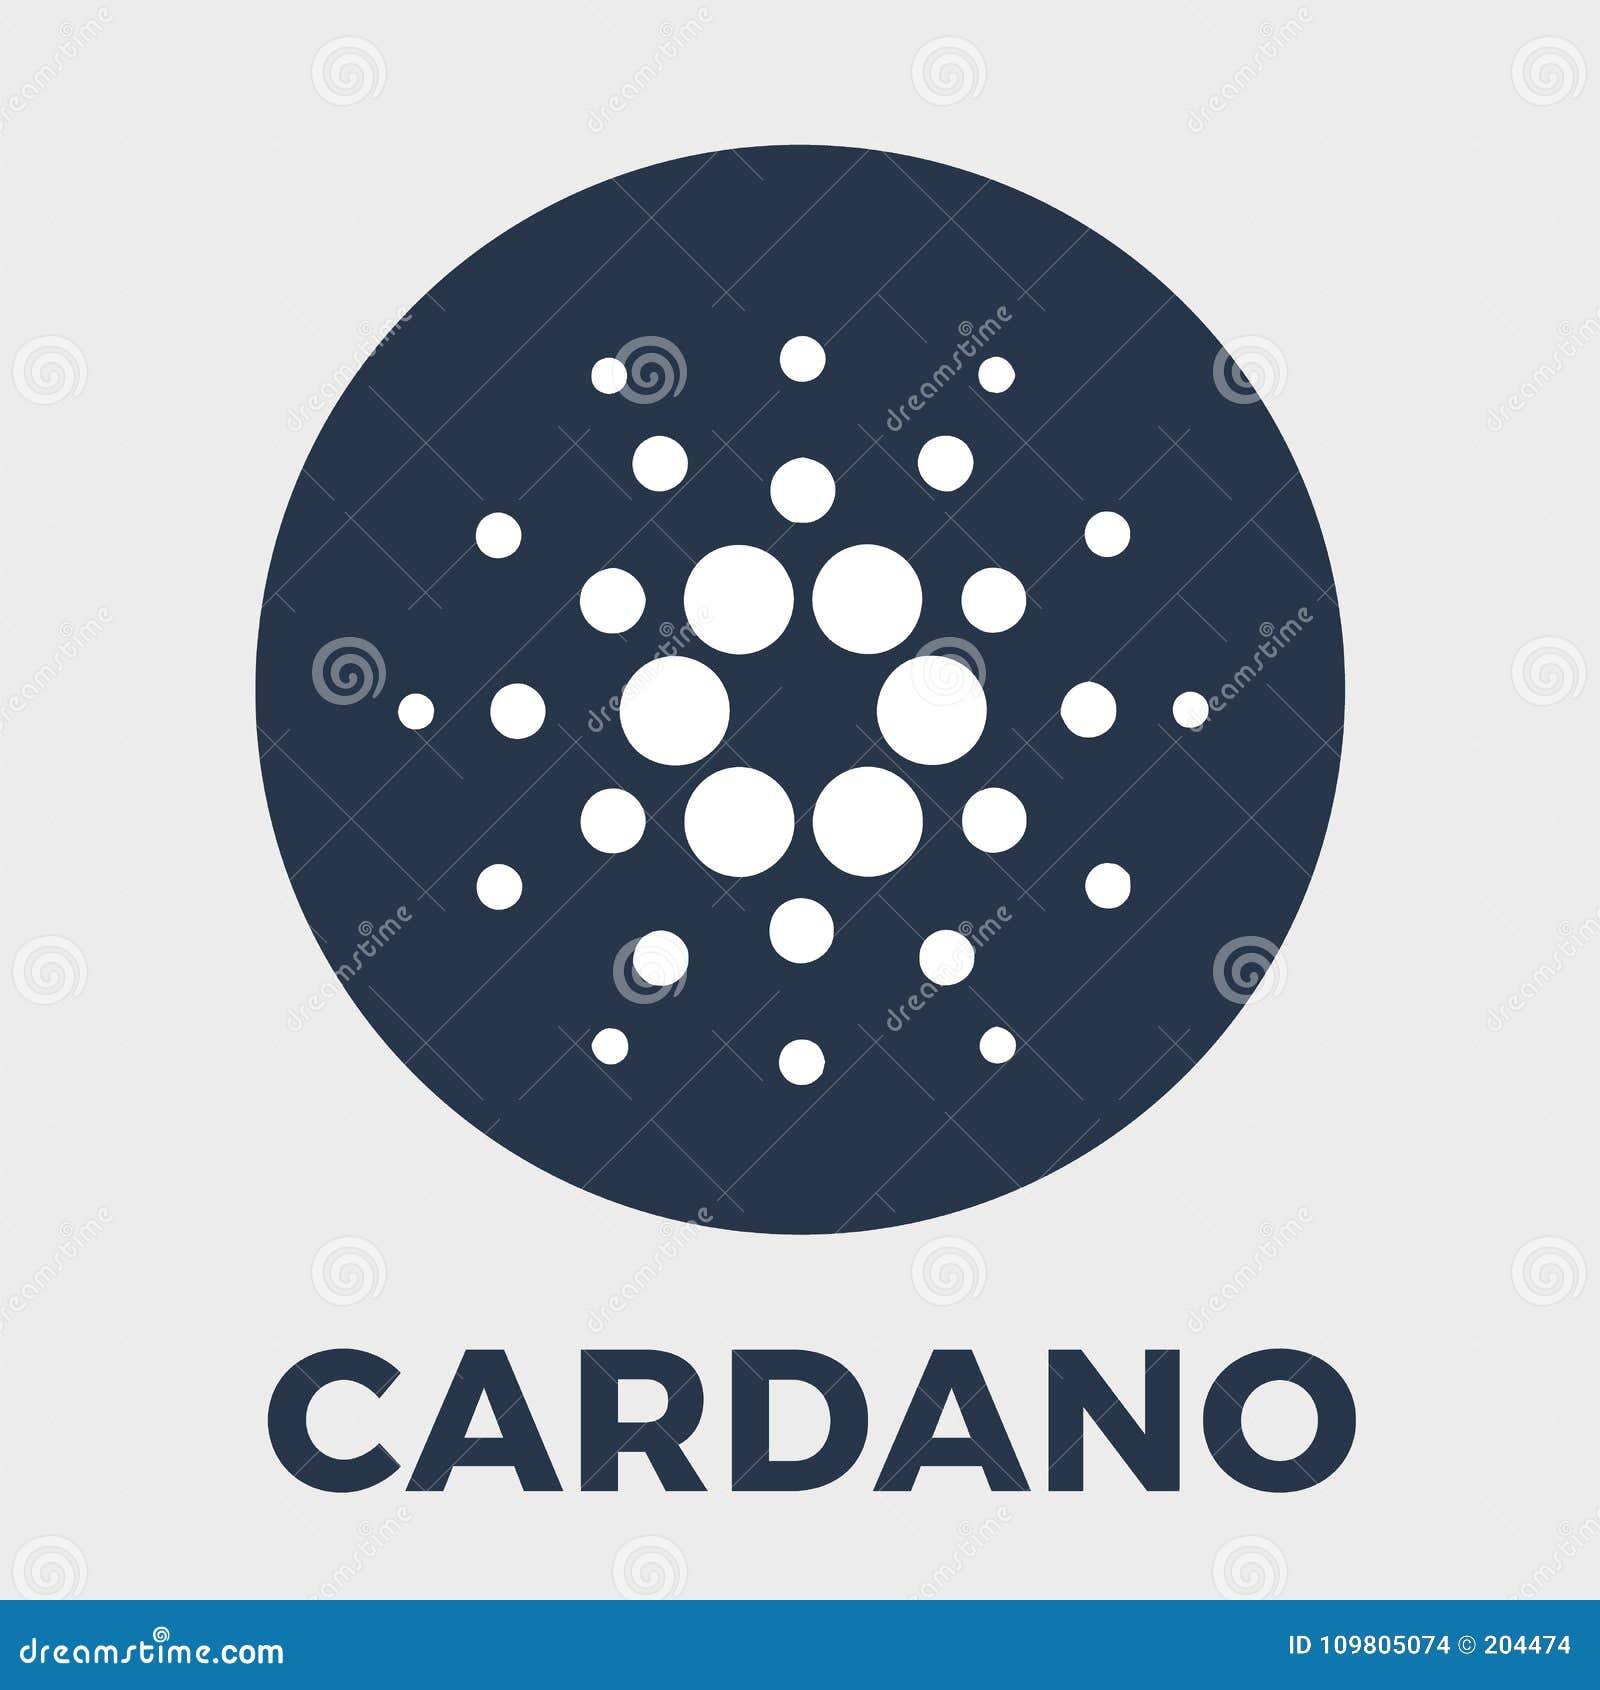 Free 18: Cardano Logo Download